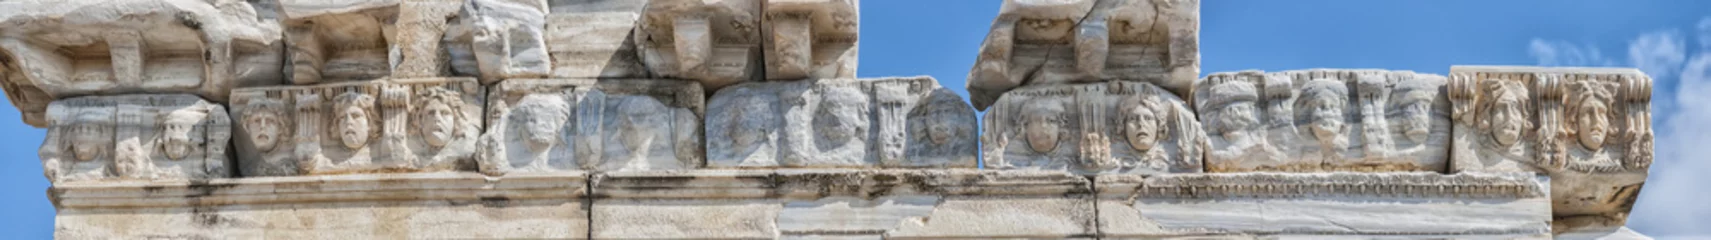 Tischdecke Side Temple of Apollo Facade Detail © Antony McAulay